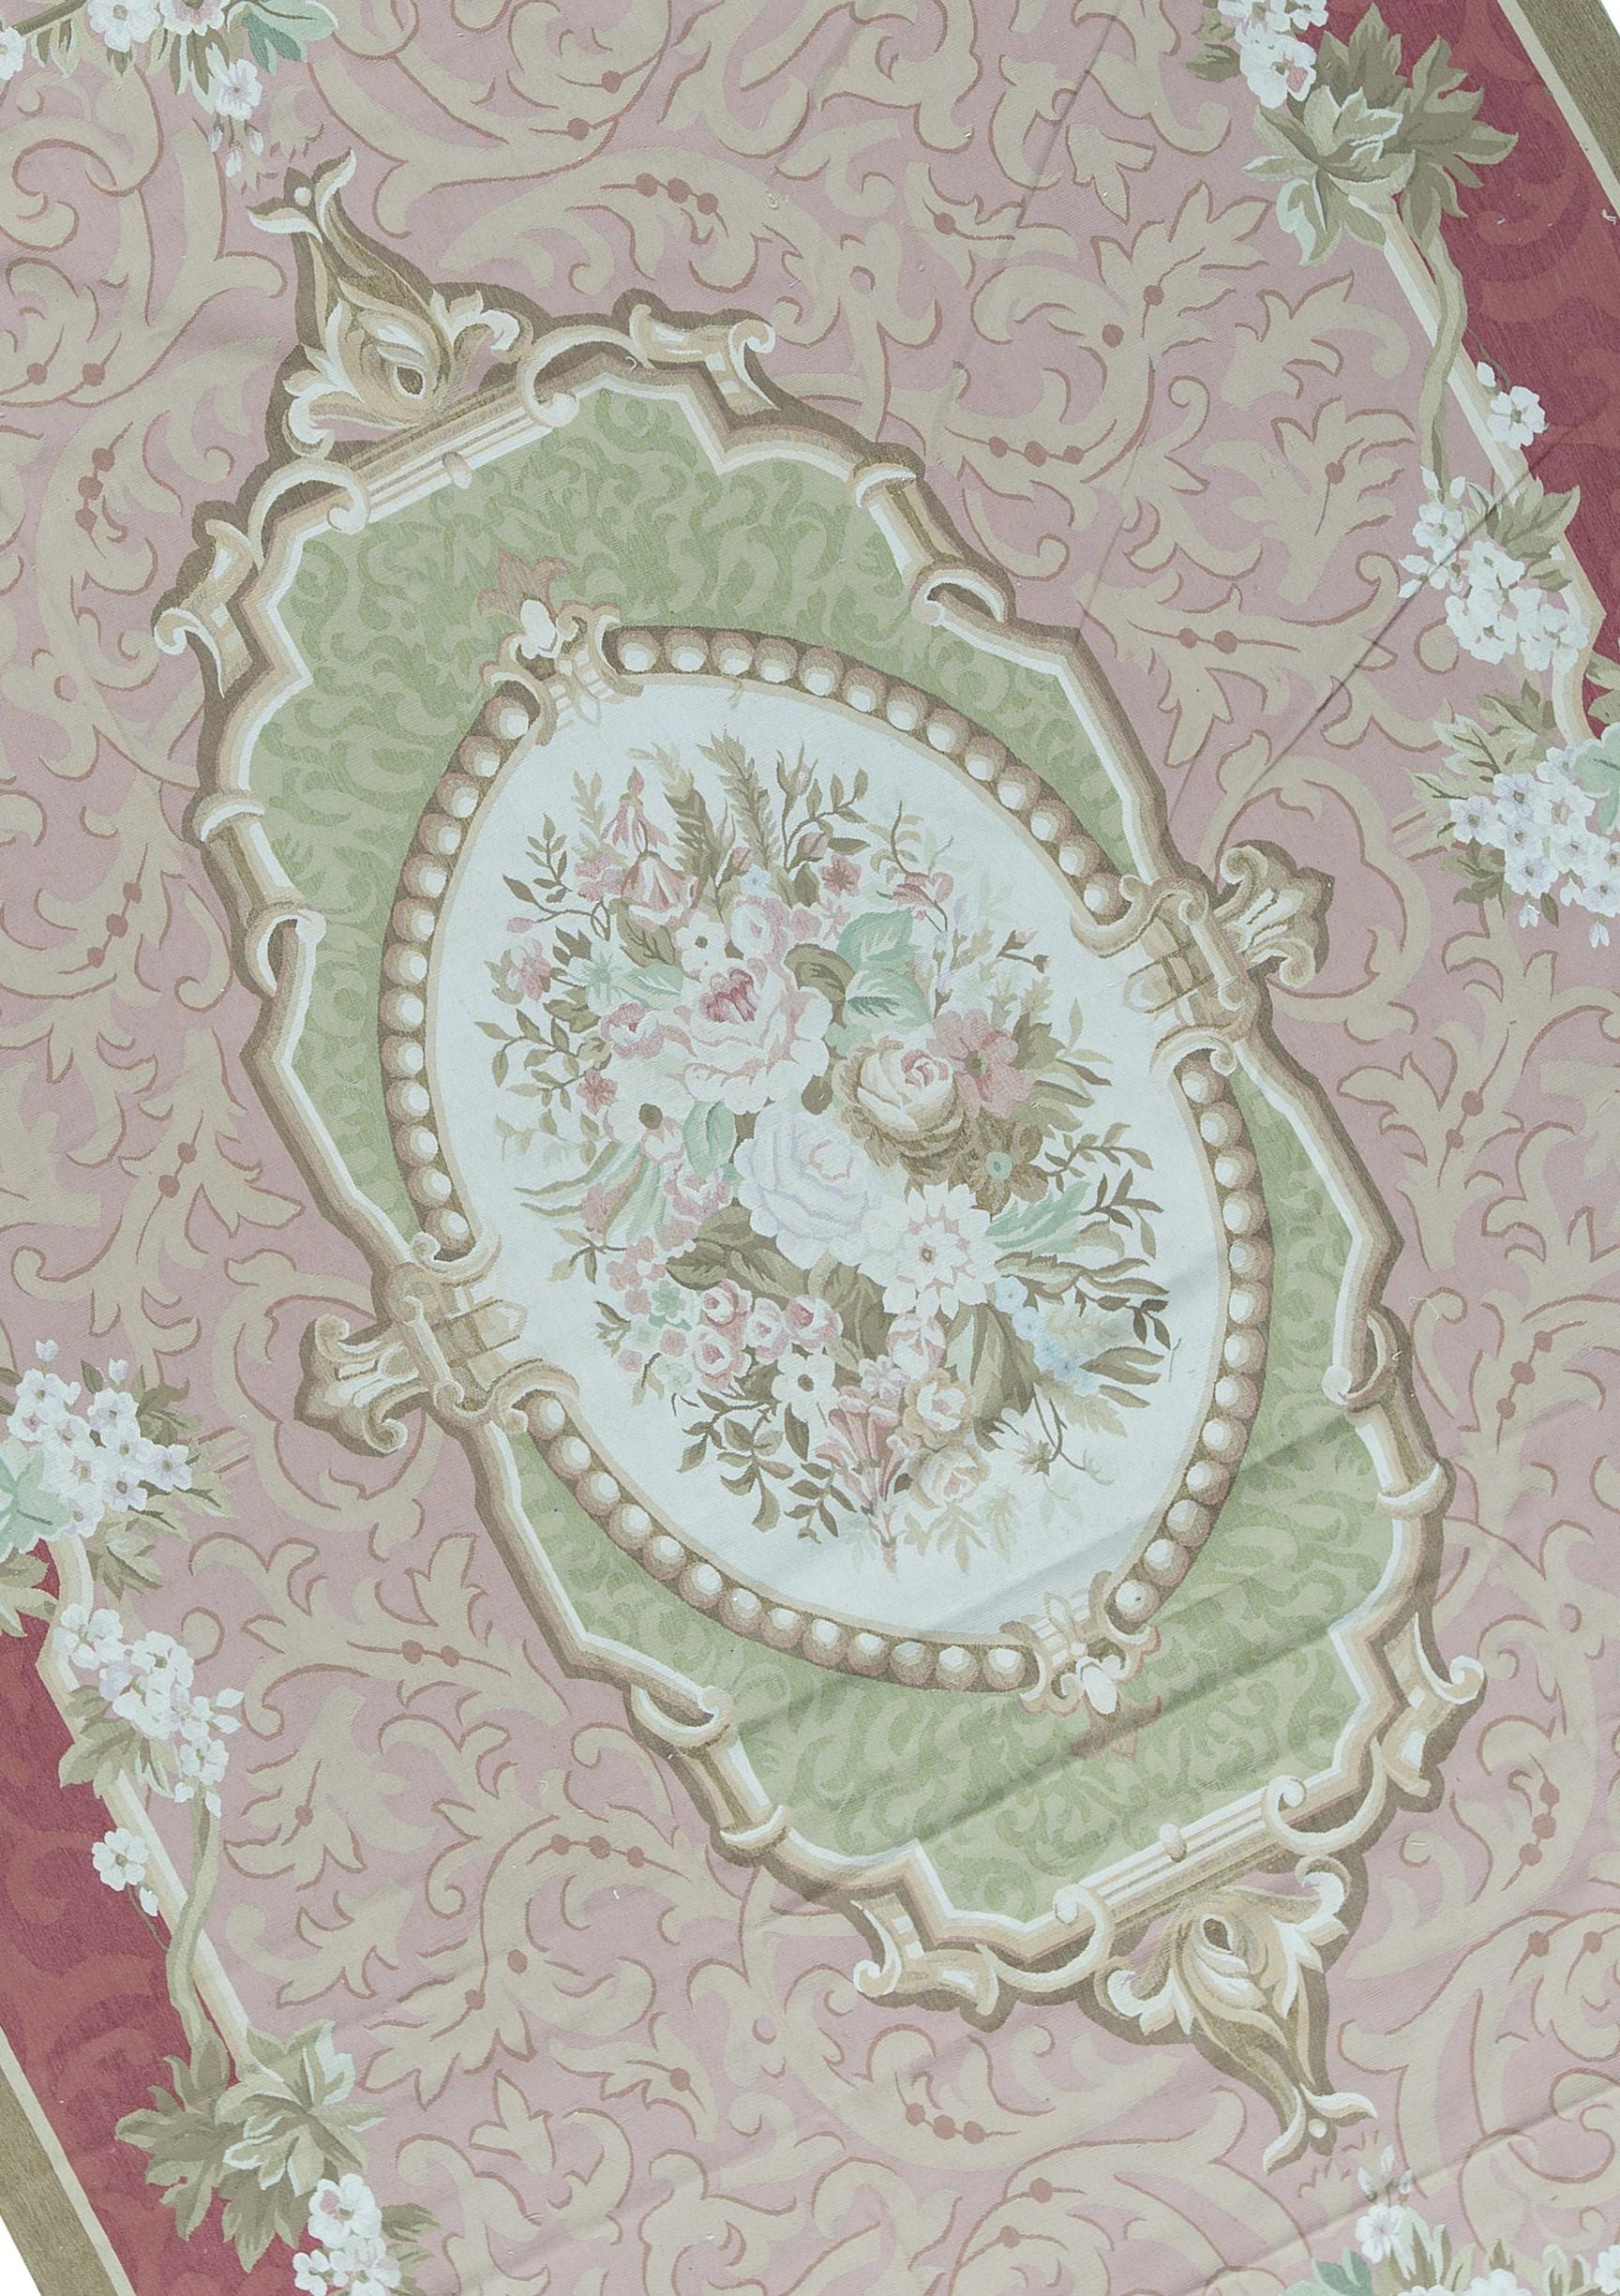 Récréation tissée à la main des tapis français classiques d'Aubusson à tissage plat que l'on trouve dans les maisons et les palais les plus raffinés depuis la fin du XVIIe siècle. Taille 10' 1'' x 14' 3''.